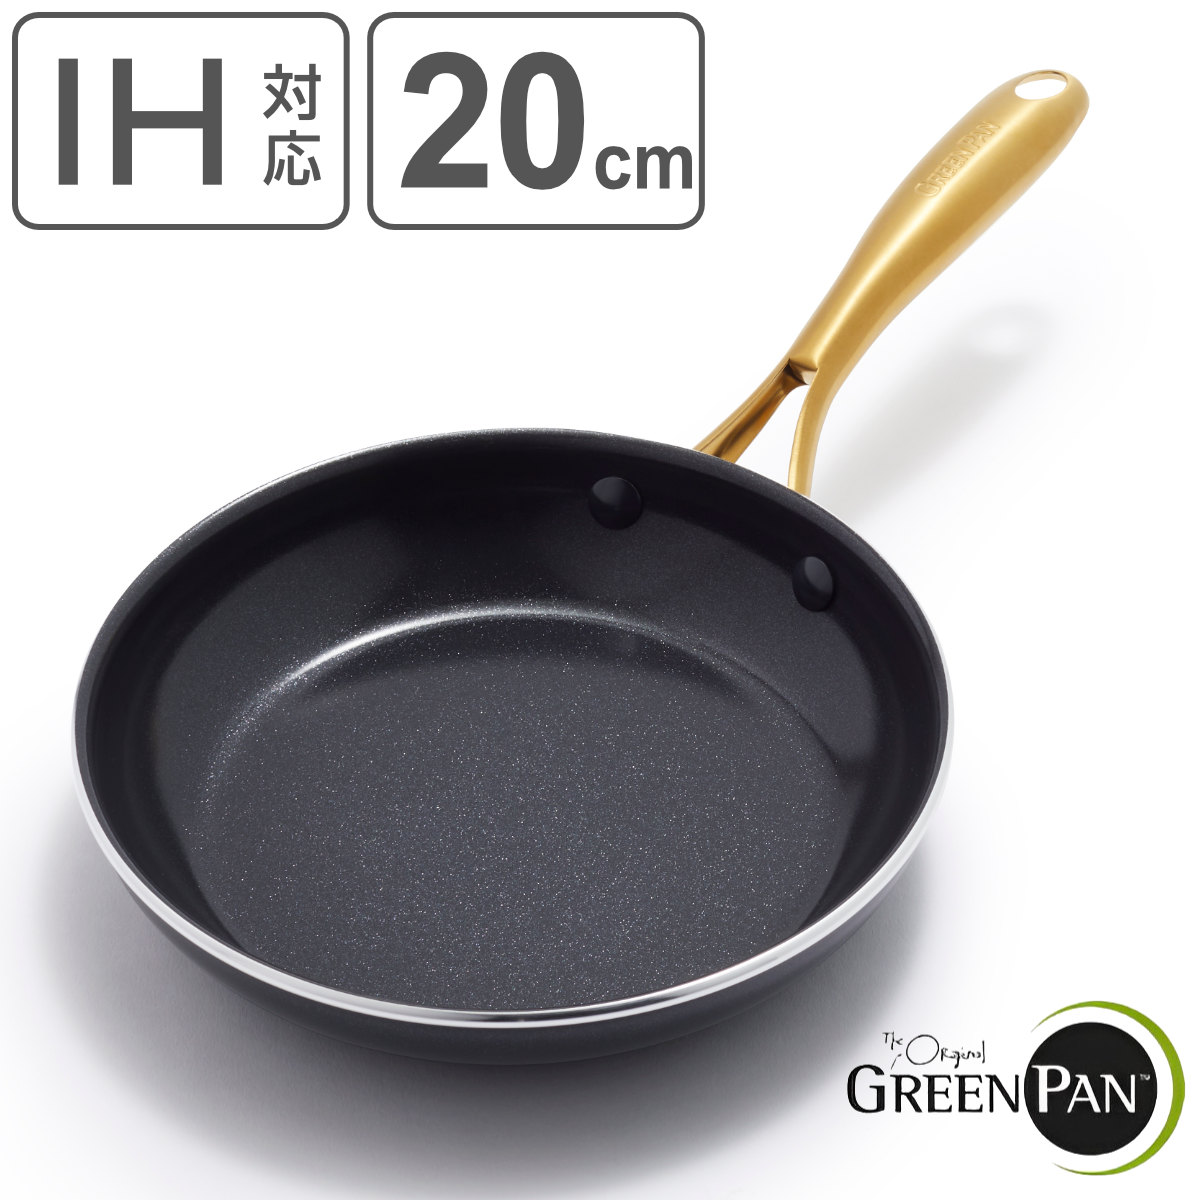 GREEN PAN フライパン 20cm IH対応 ストゥディオ